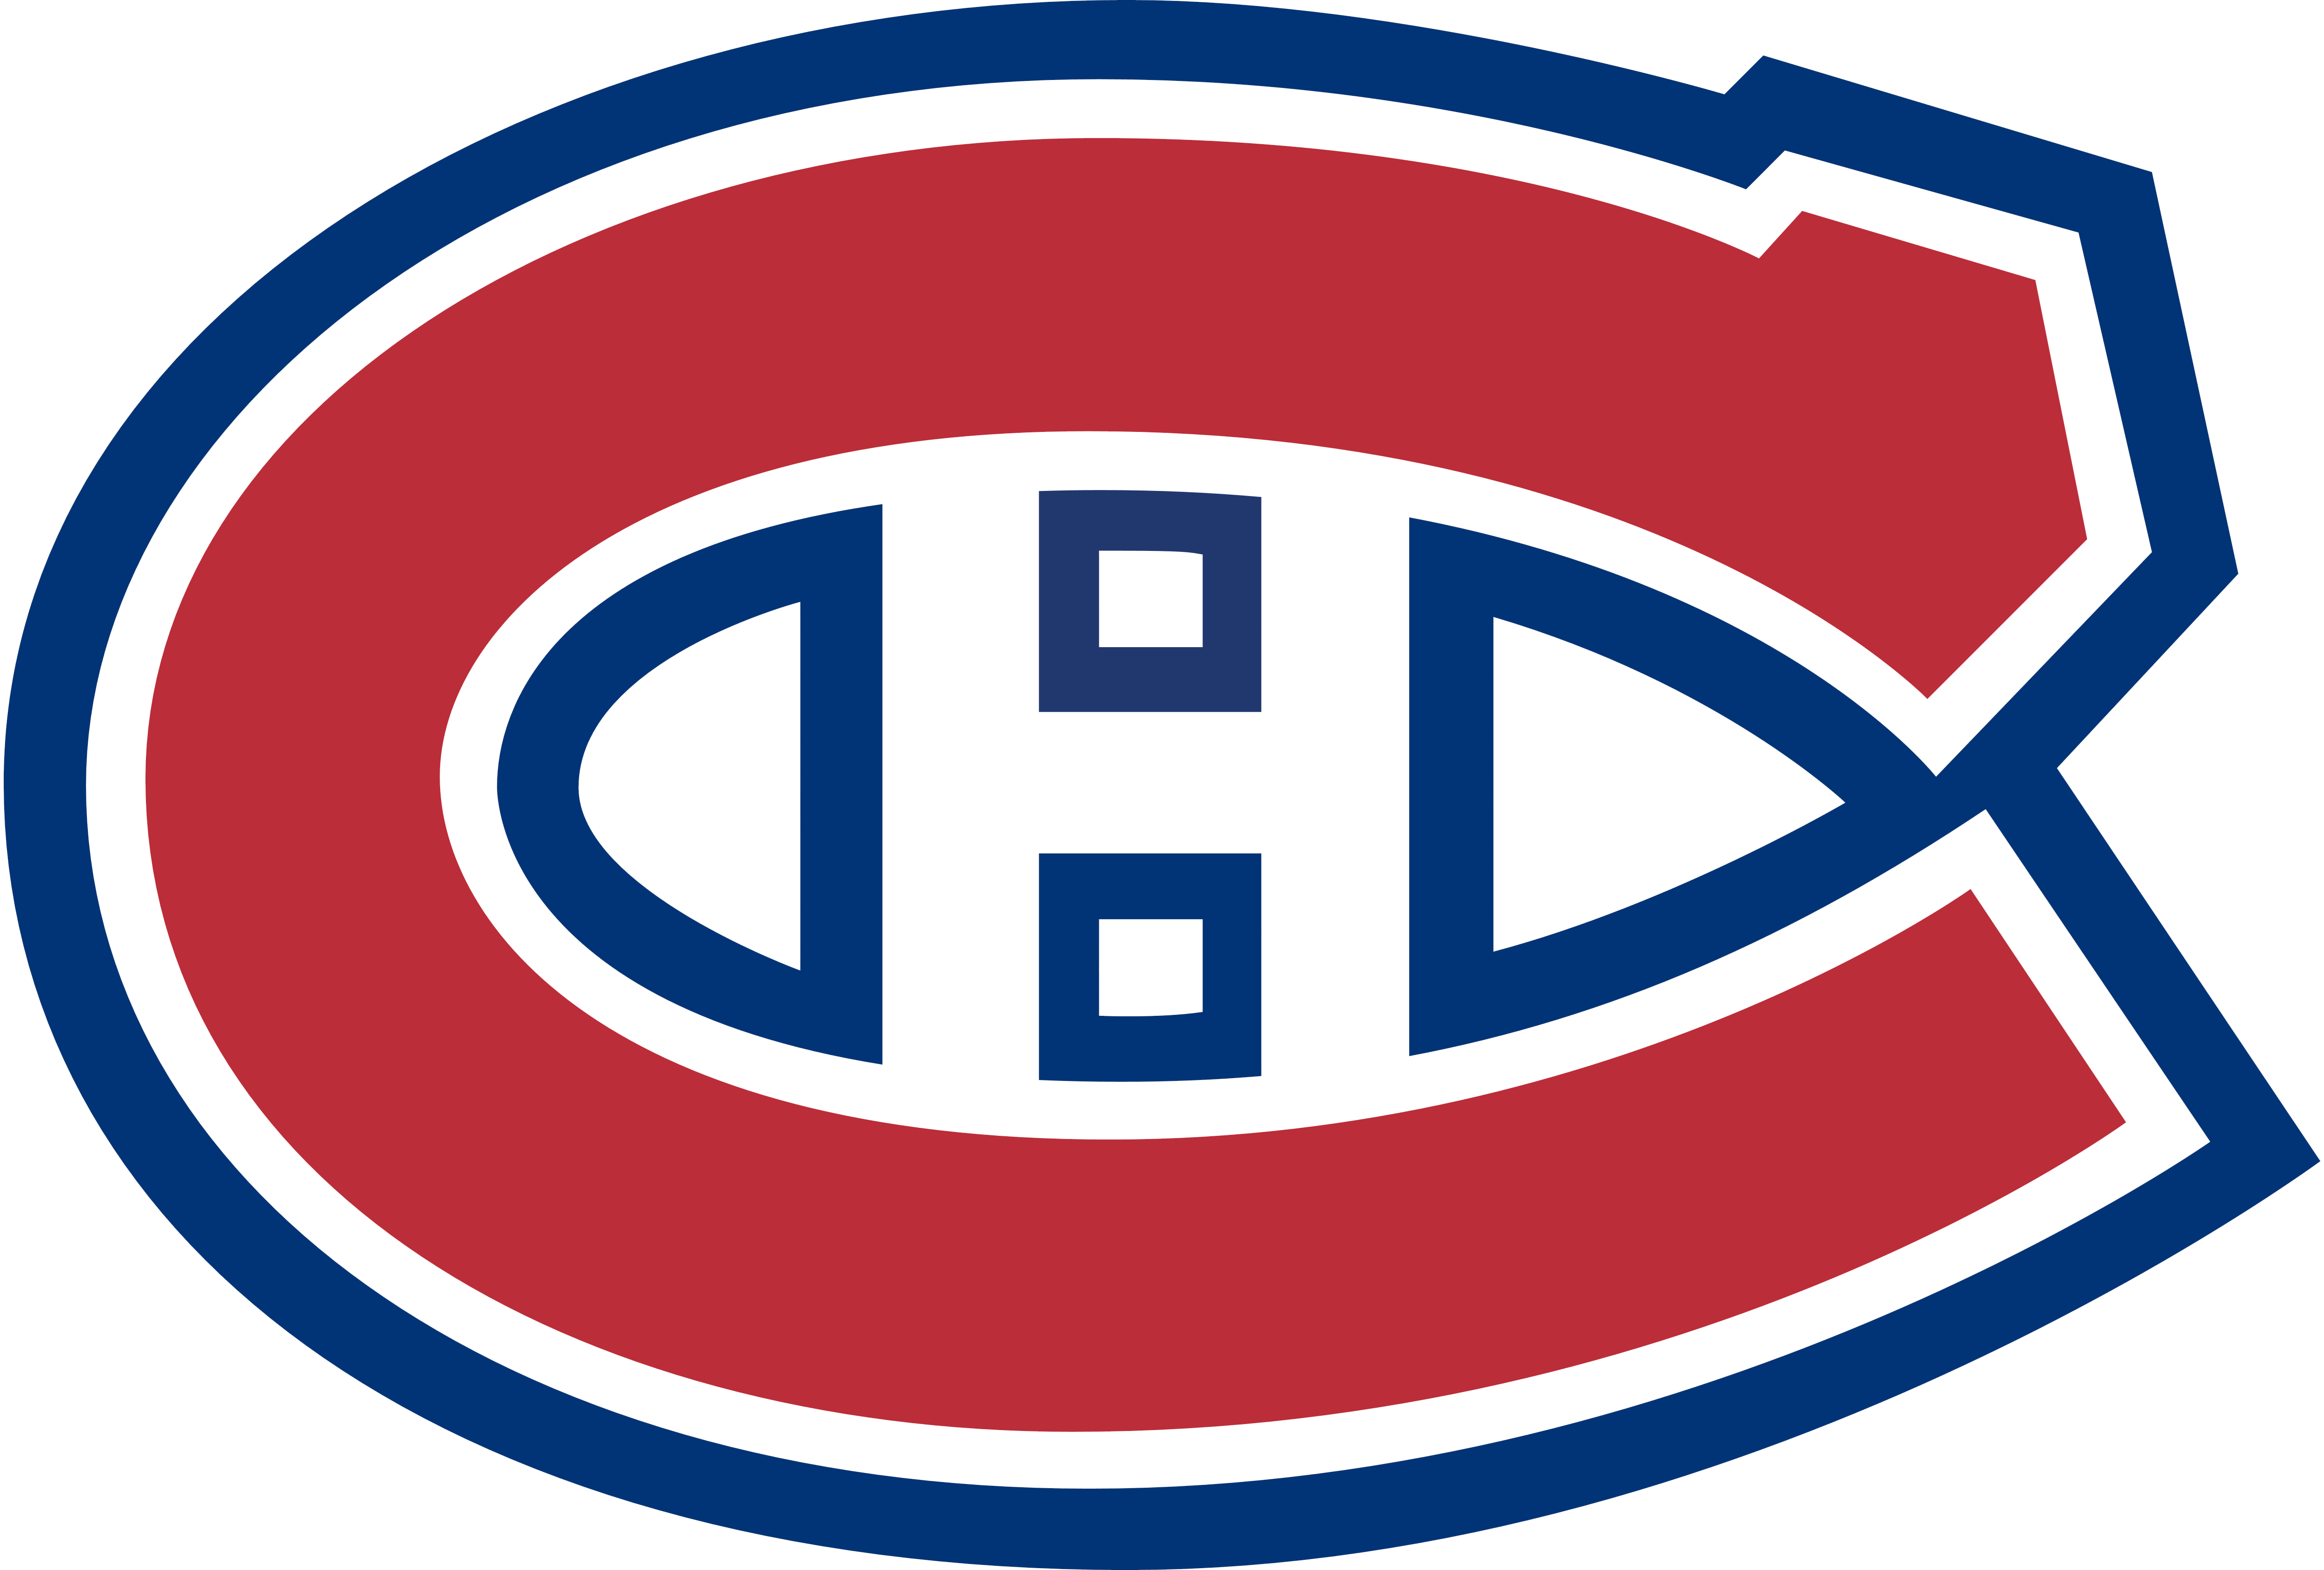 [Image: Montreal_Canadiens_logo_logotype_emblem.png]